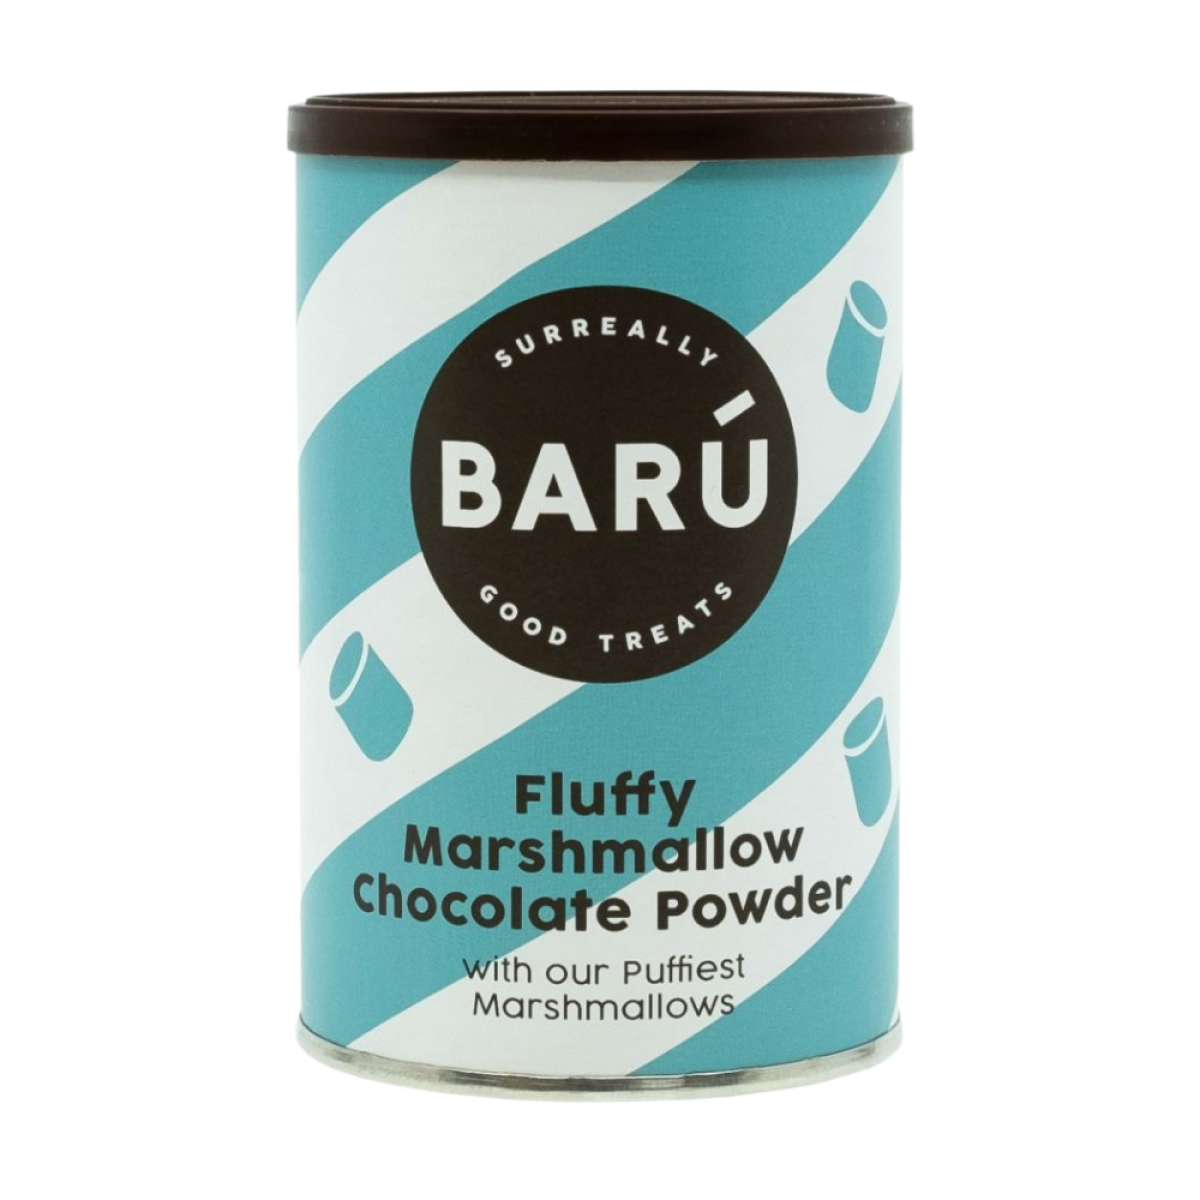 Fluffy chocolate powder